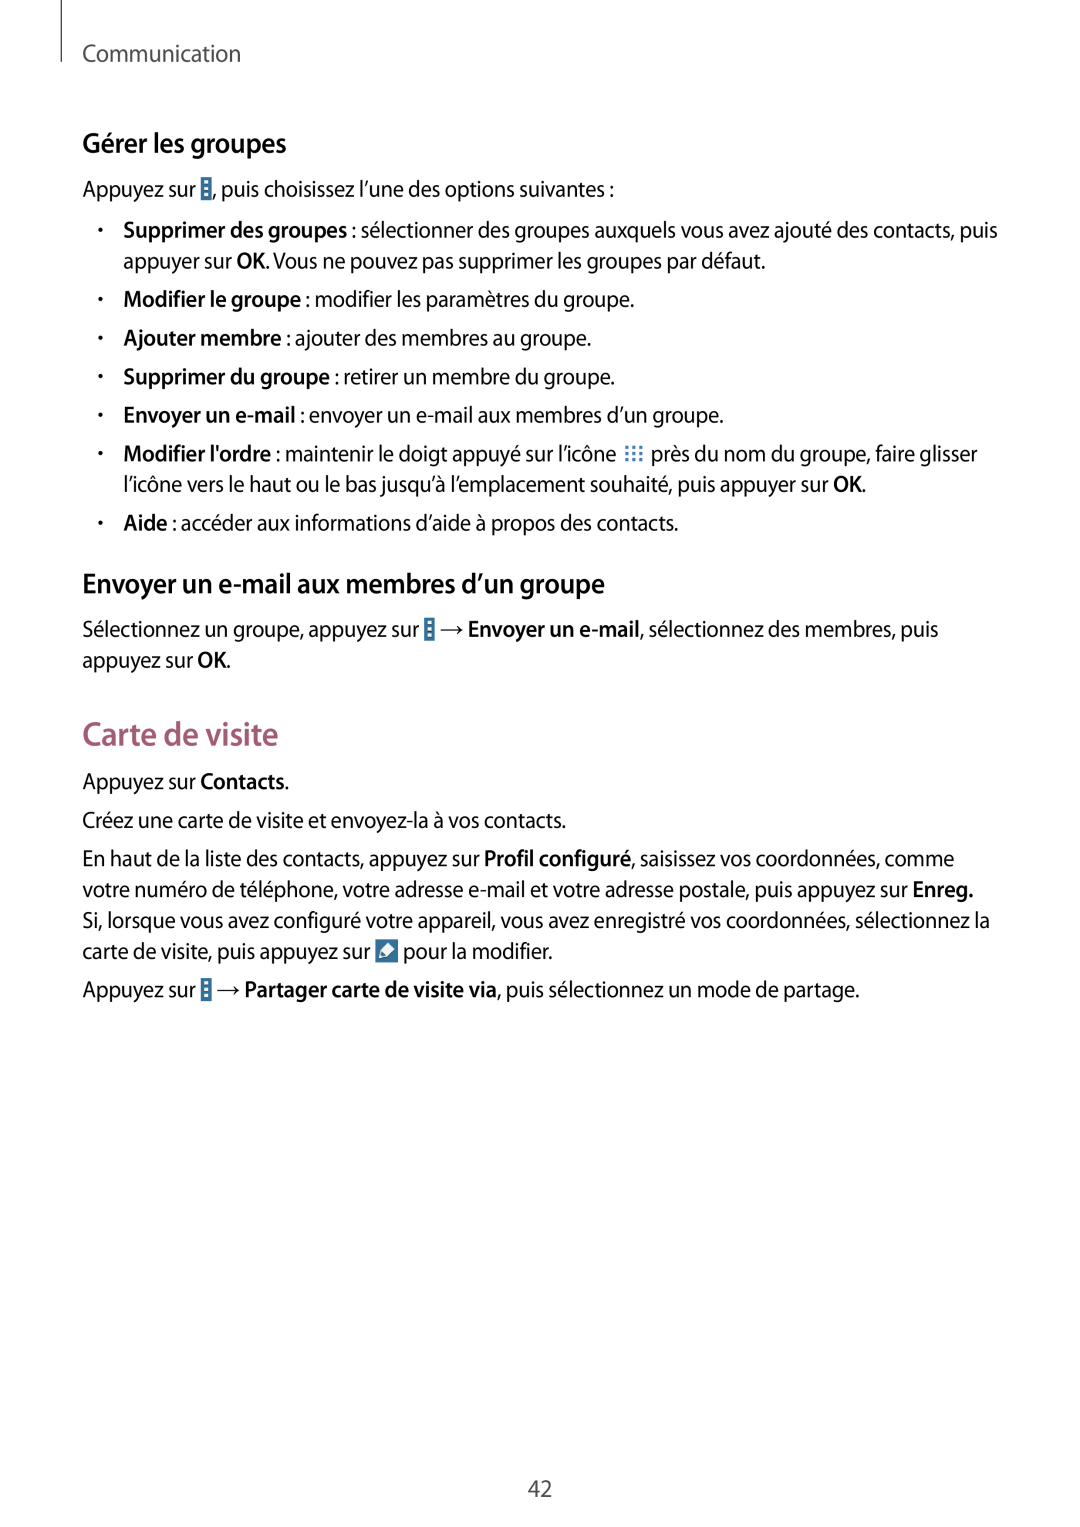 Samsung SM-T533NYKAXEF manual Carte de visite, Gérer les groupes, Envoyer un e-mail aux membres d’un groupe, Communication 